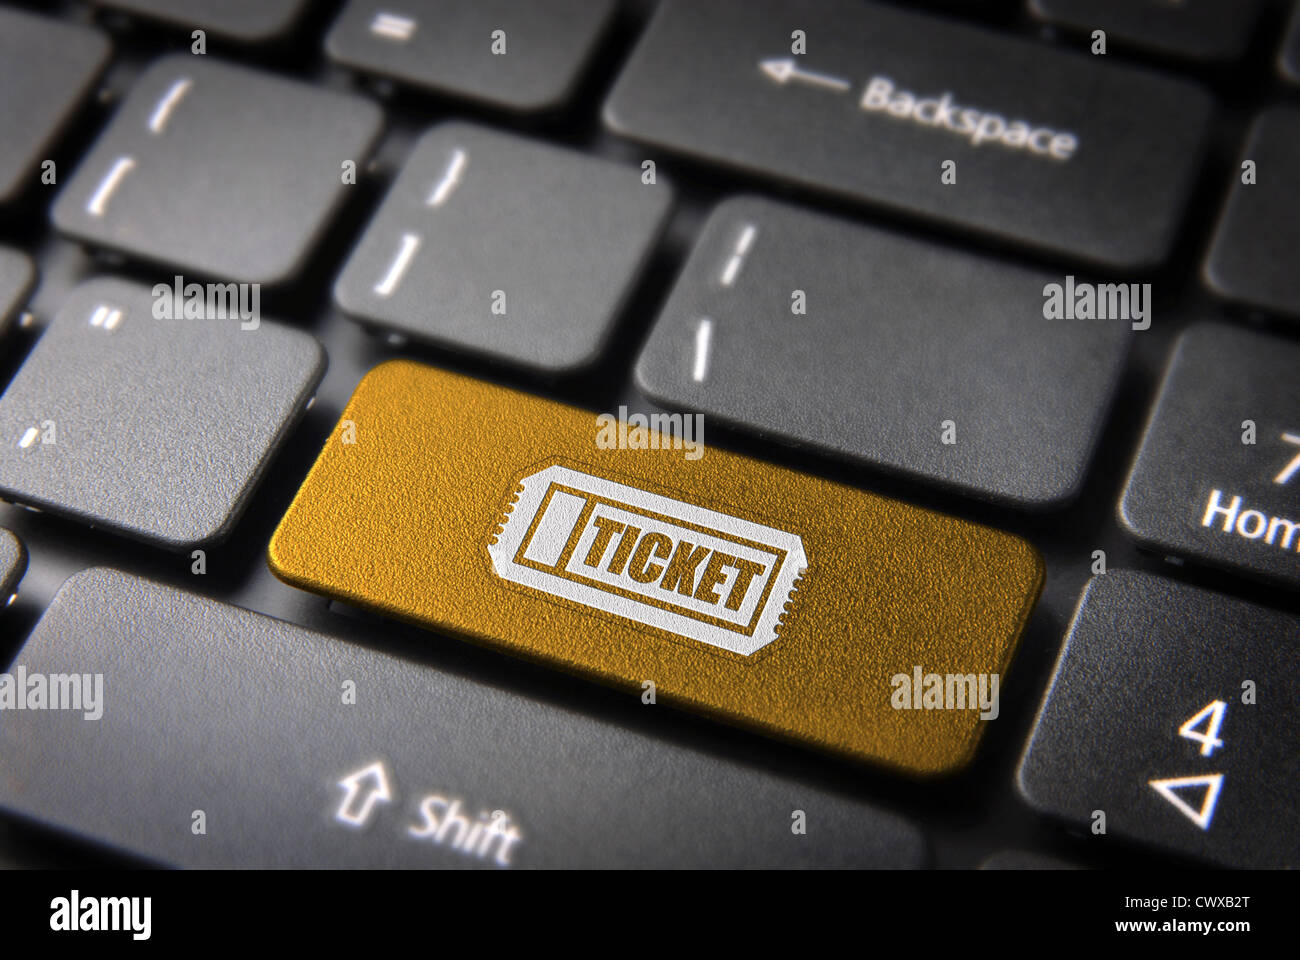 Kaufen Sie Online-Schlüssel Eingang mit Icon "Fahrkarte" auf Laptop-Tastatur. Im Preis inbegriffen Clipping-Pfad, so dass Sie leicht bearbeitet werden kann. Stockfoto